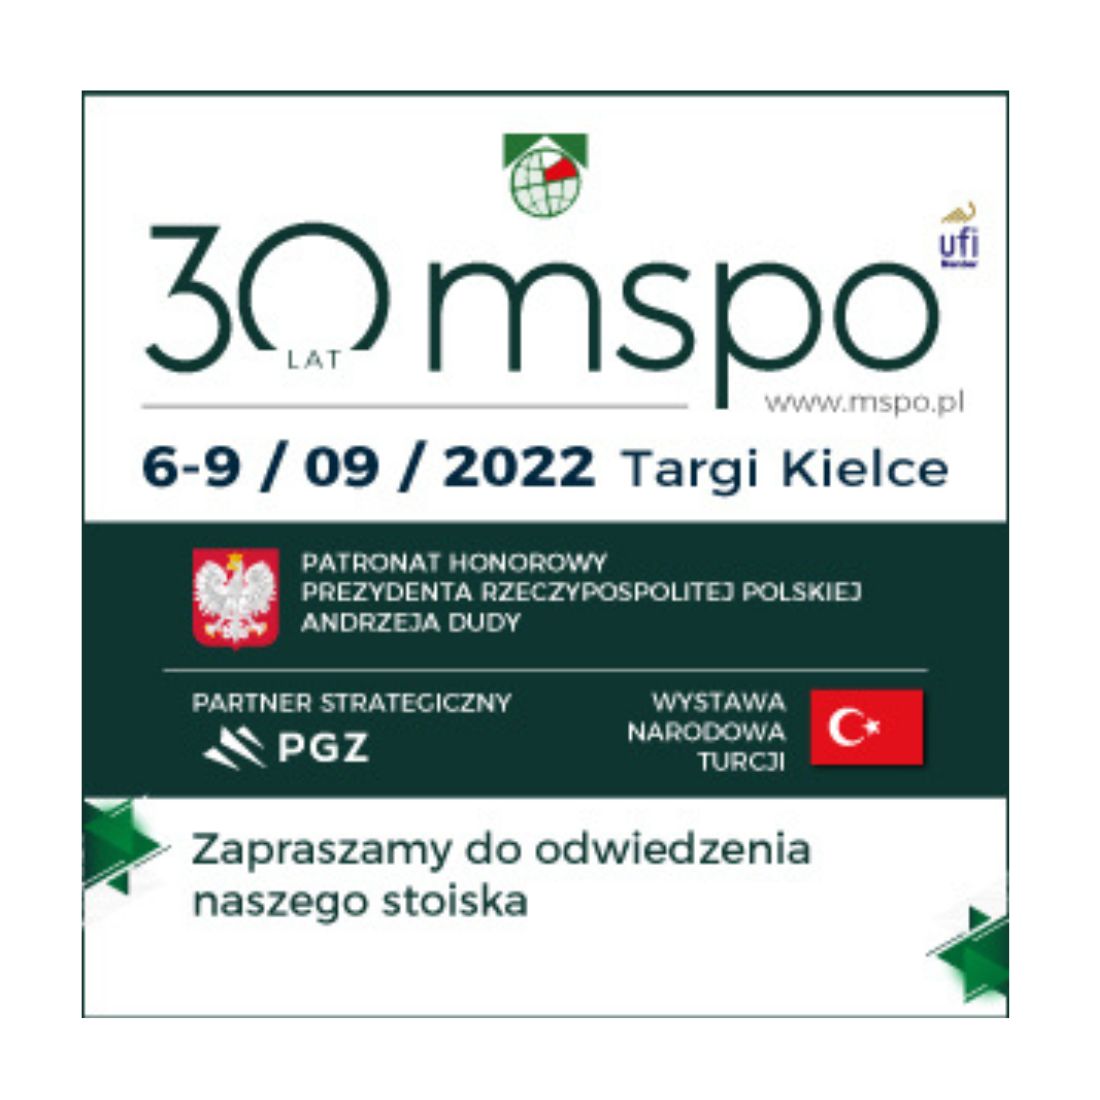 gl optic defense industry rozwiązania dla przemysłu obronnego solutions MSPO Kielce